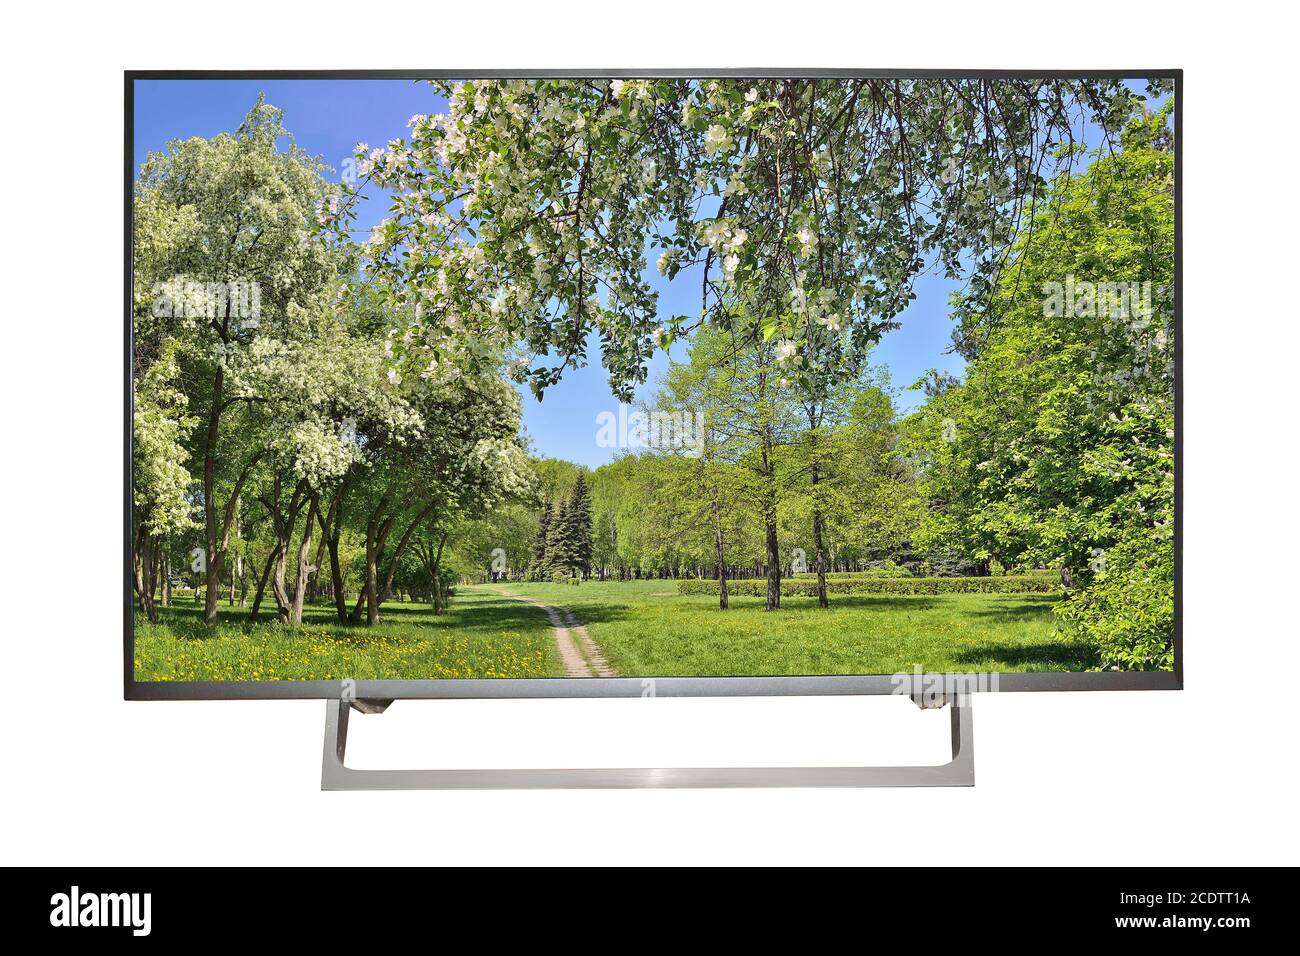 Moderno televisor o monitor de alta definición con paisaje primaveral en pantalla Foto de stock